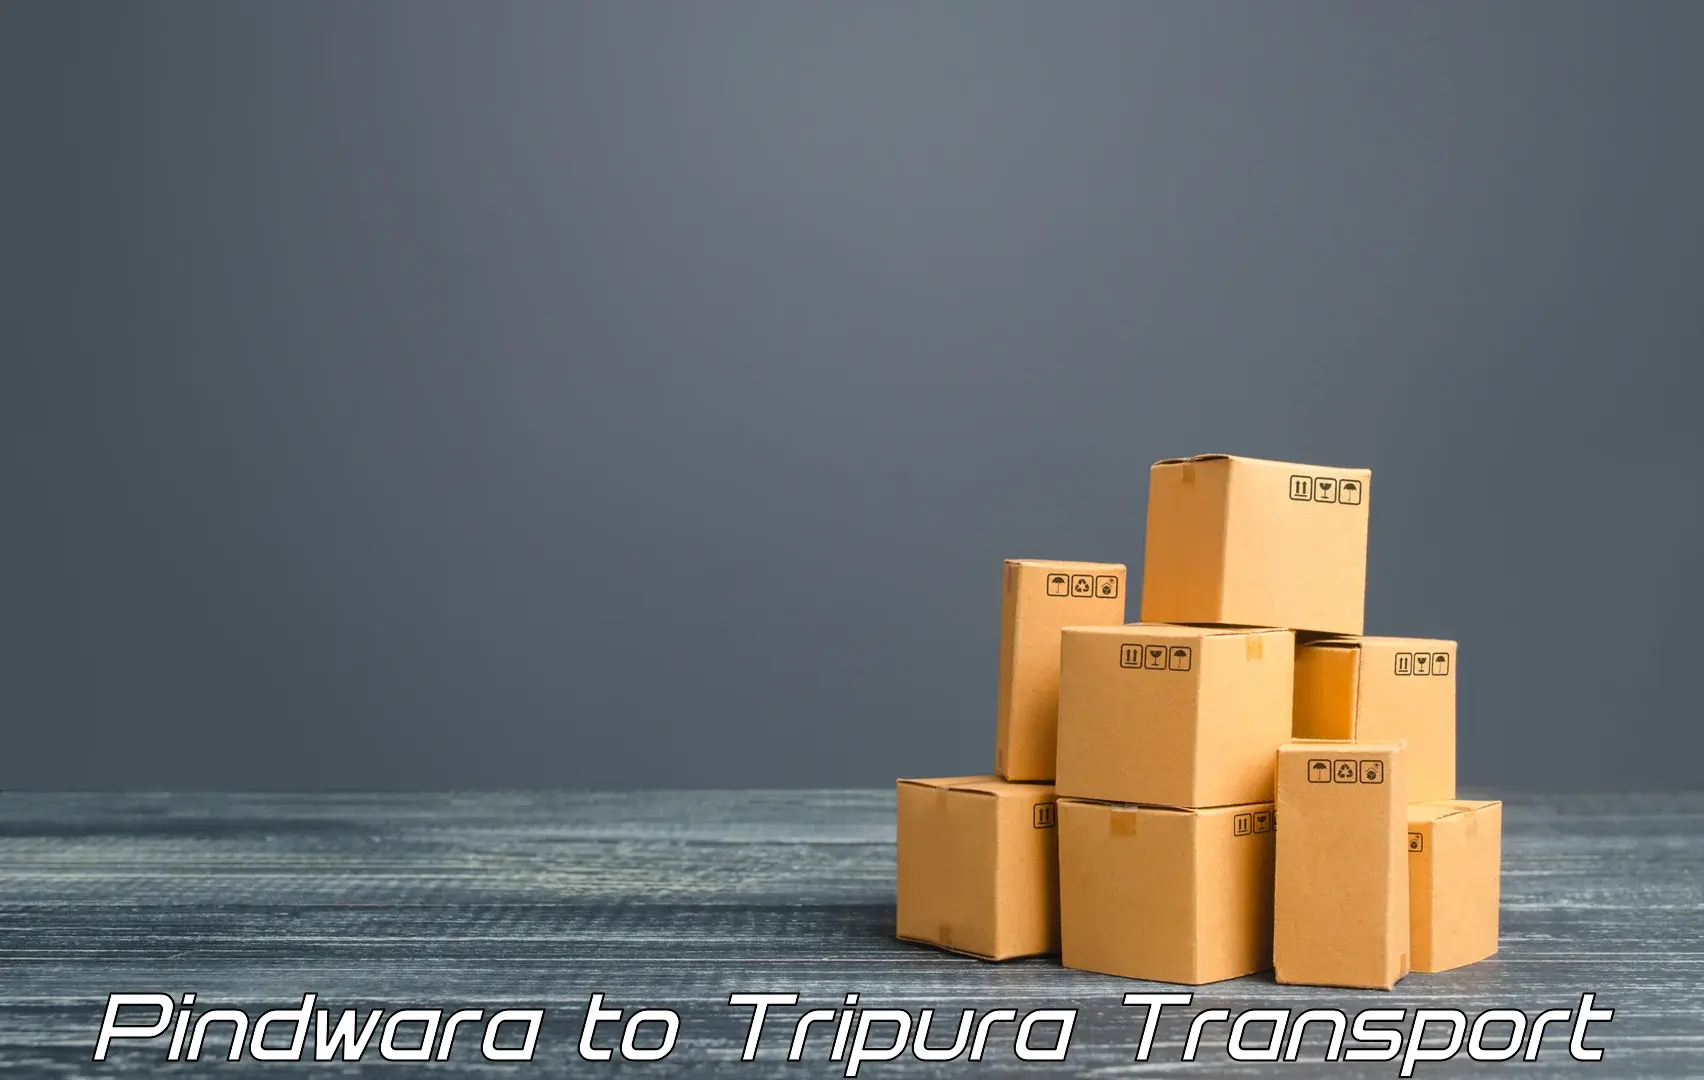 Daily parcel service transport Pindwara to Tripura